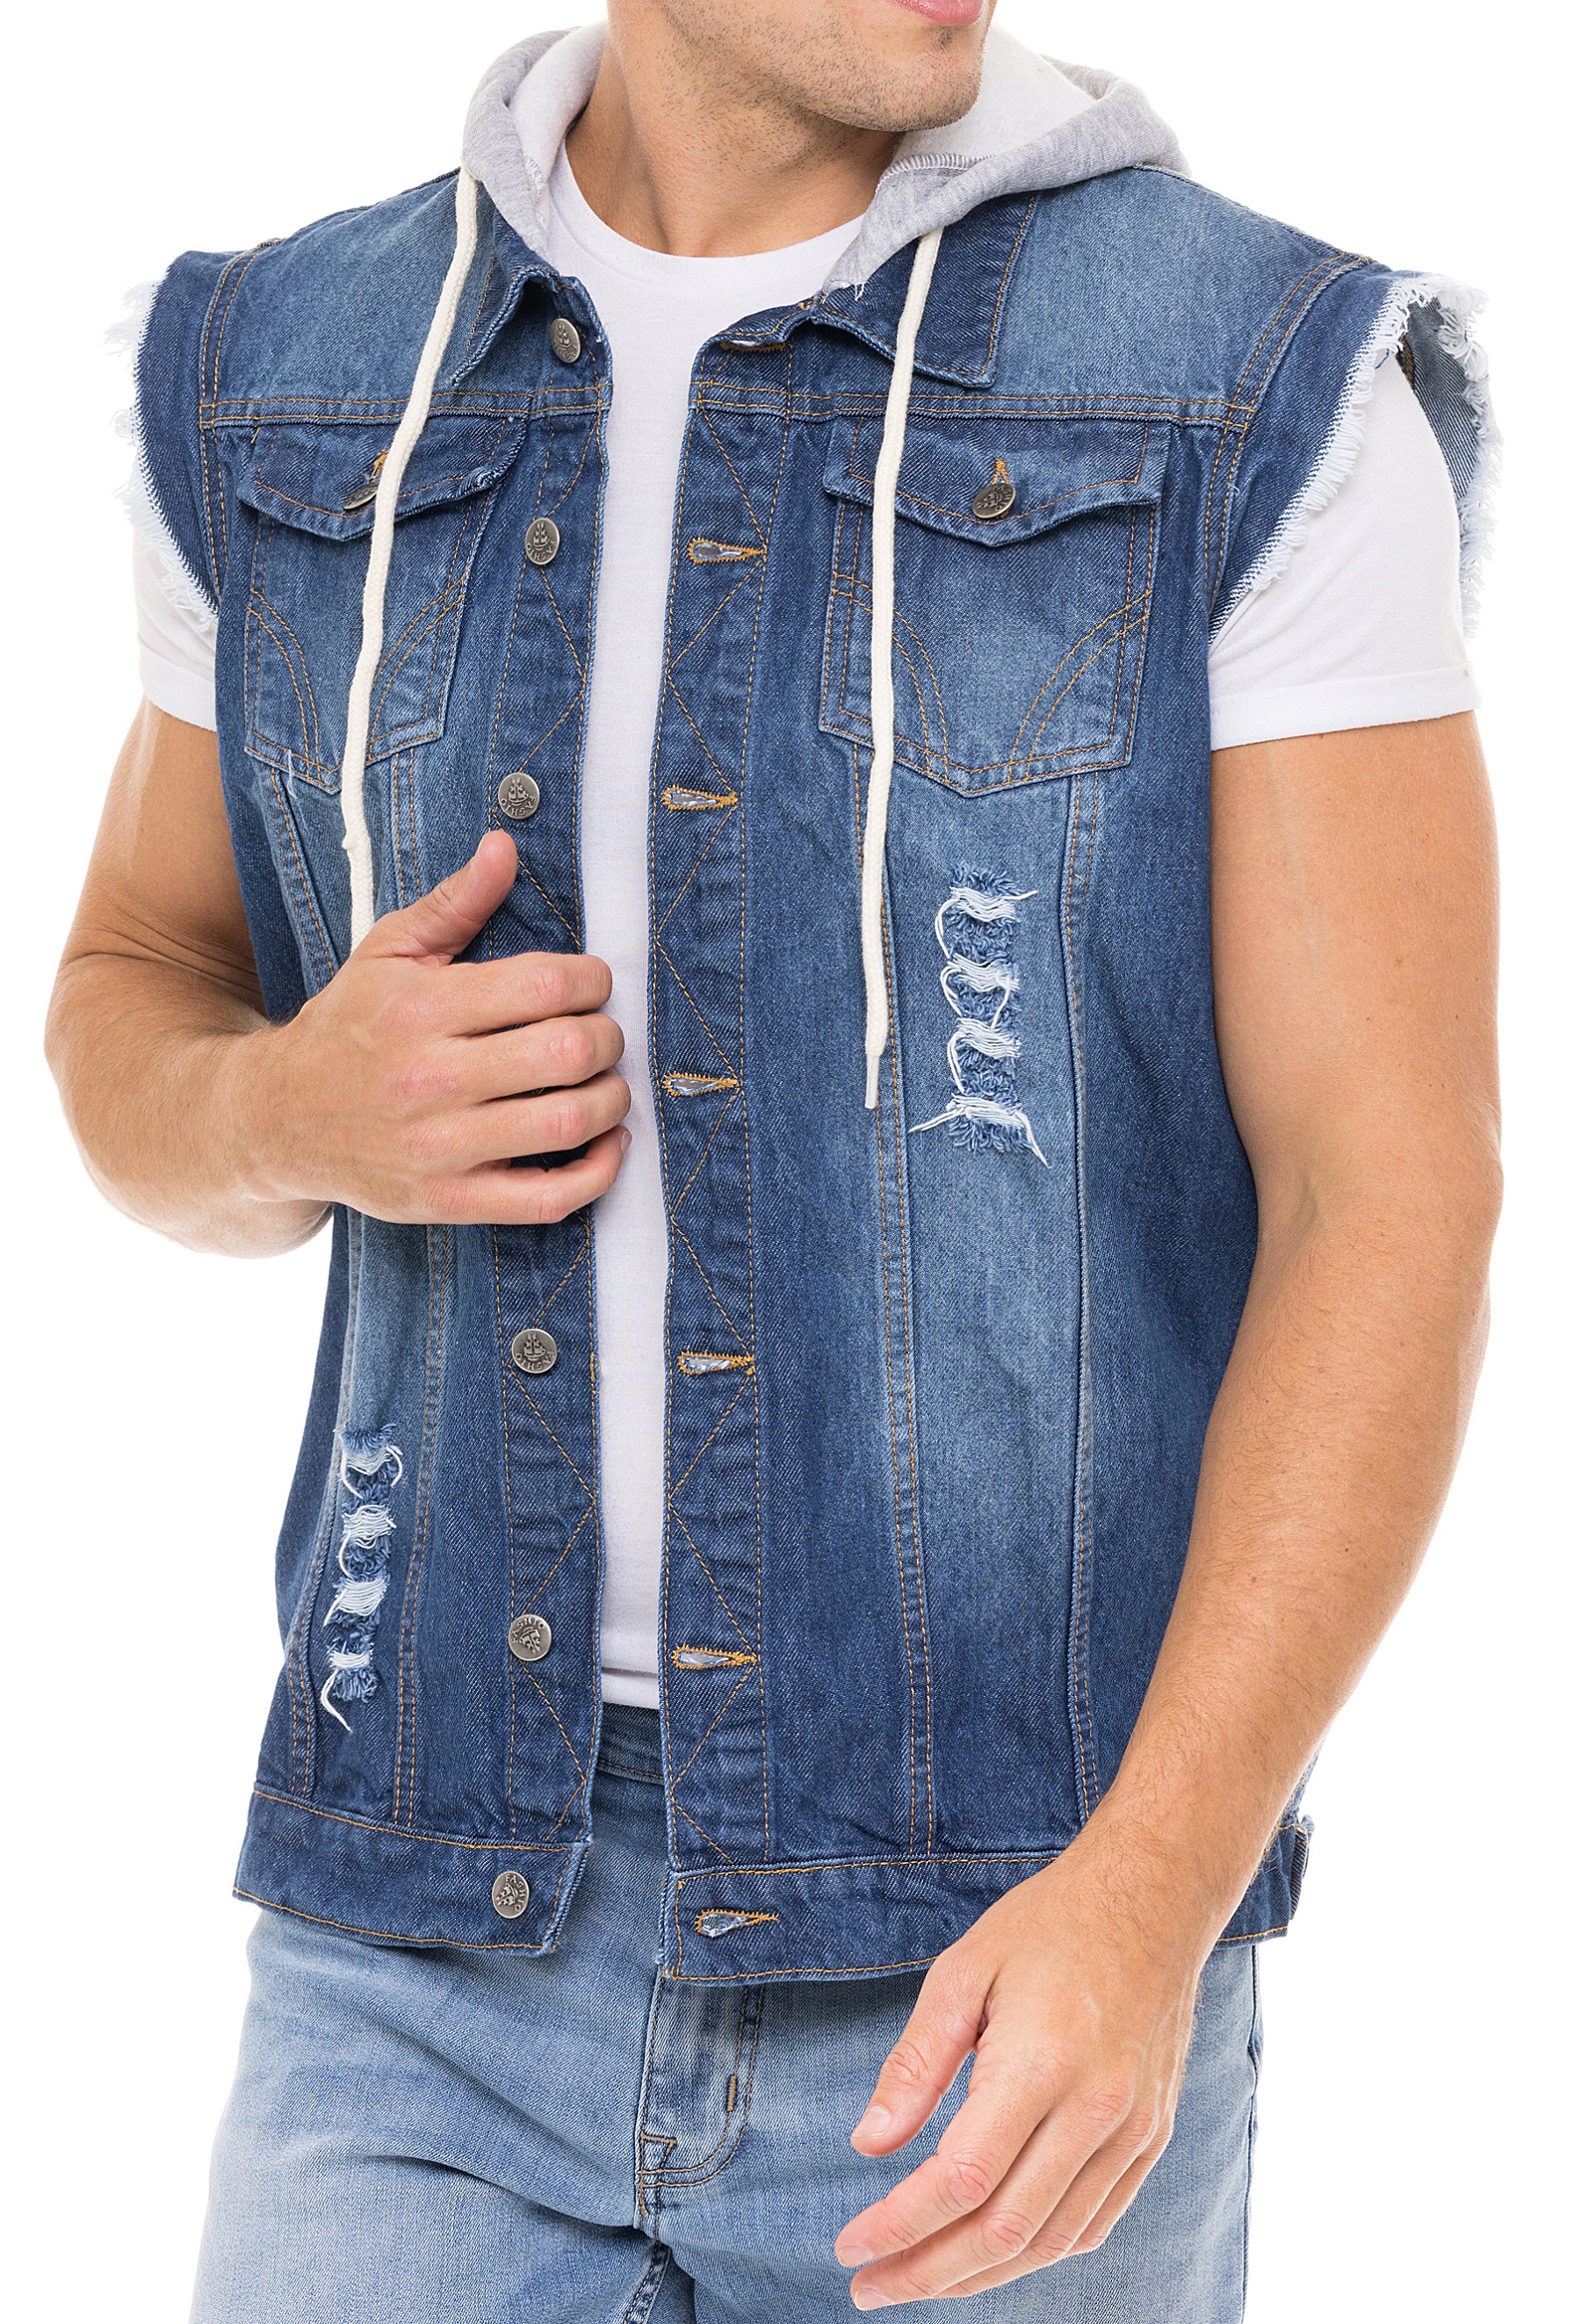 Skylinewears Men Denim Vest Biker Jean Vest With Hood Sleeveless Trucker Jean Jacket - image 5 of 5